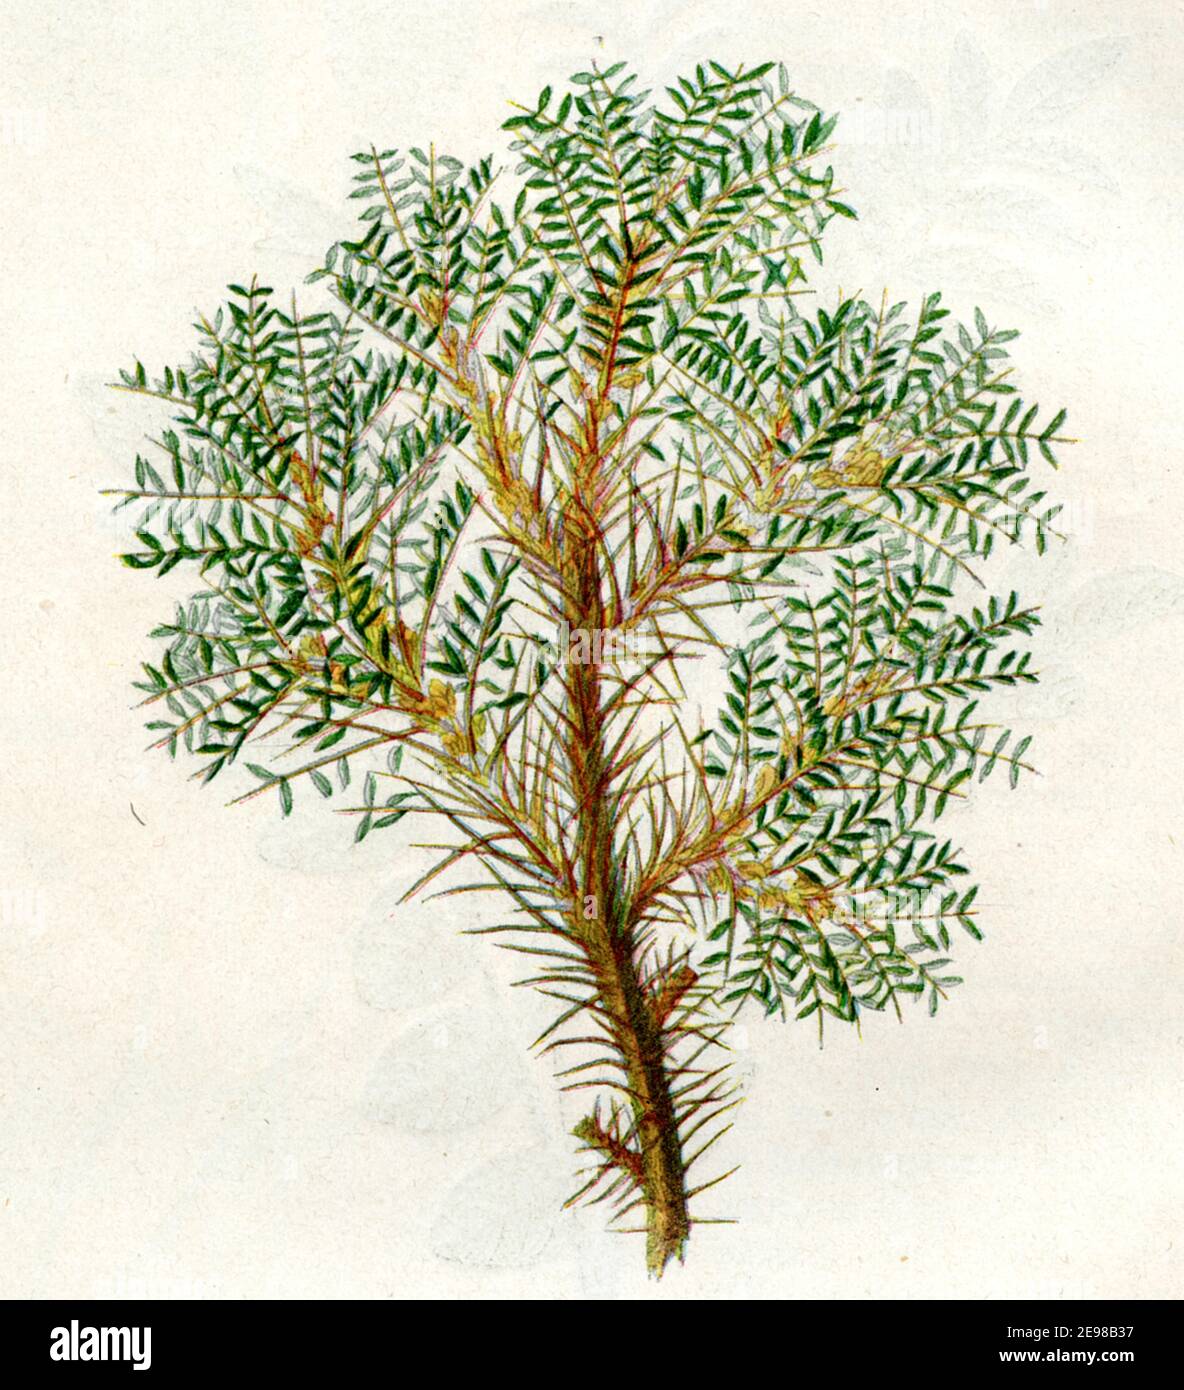 tragacanth, gum tragacanth milkvetch / Astragalus gummifer / Astragalus gummifer / botany book, 1900) Stock Photo